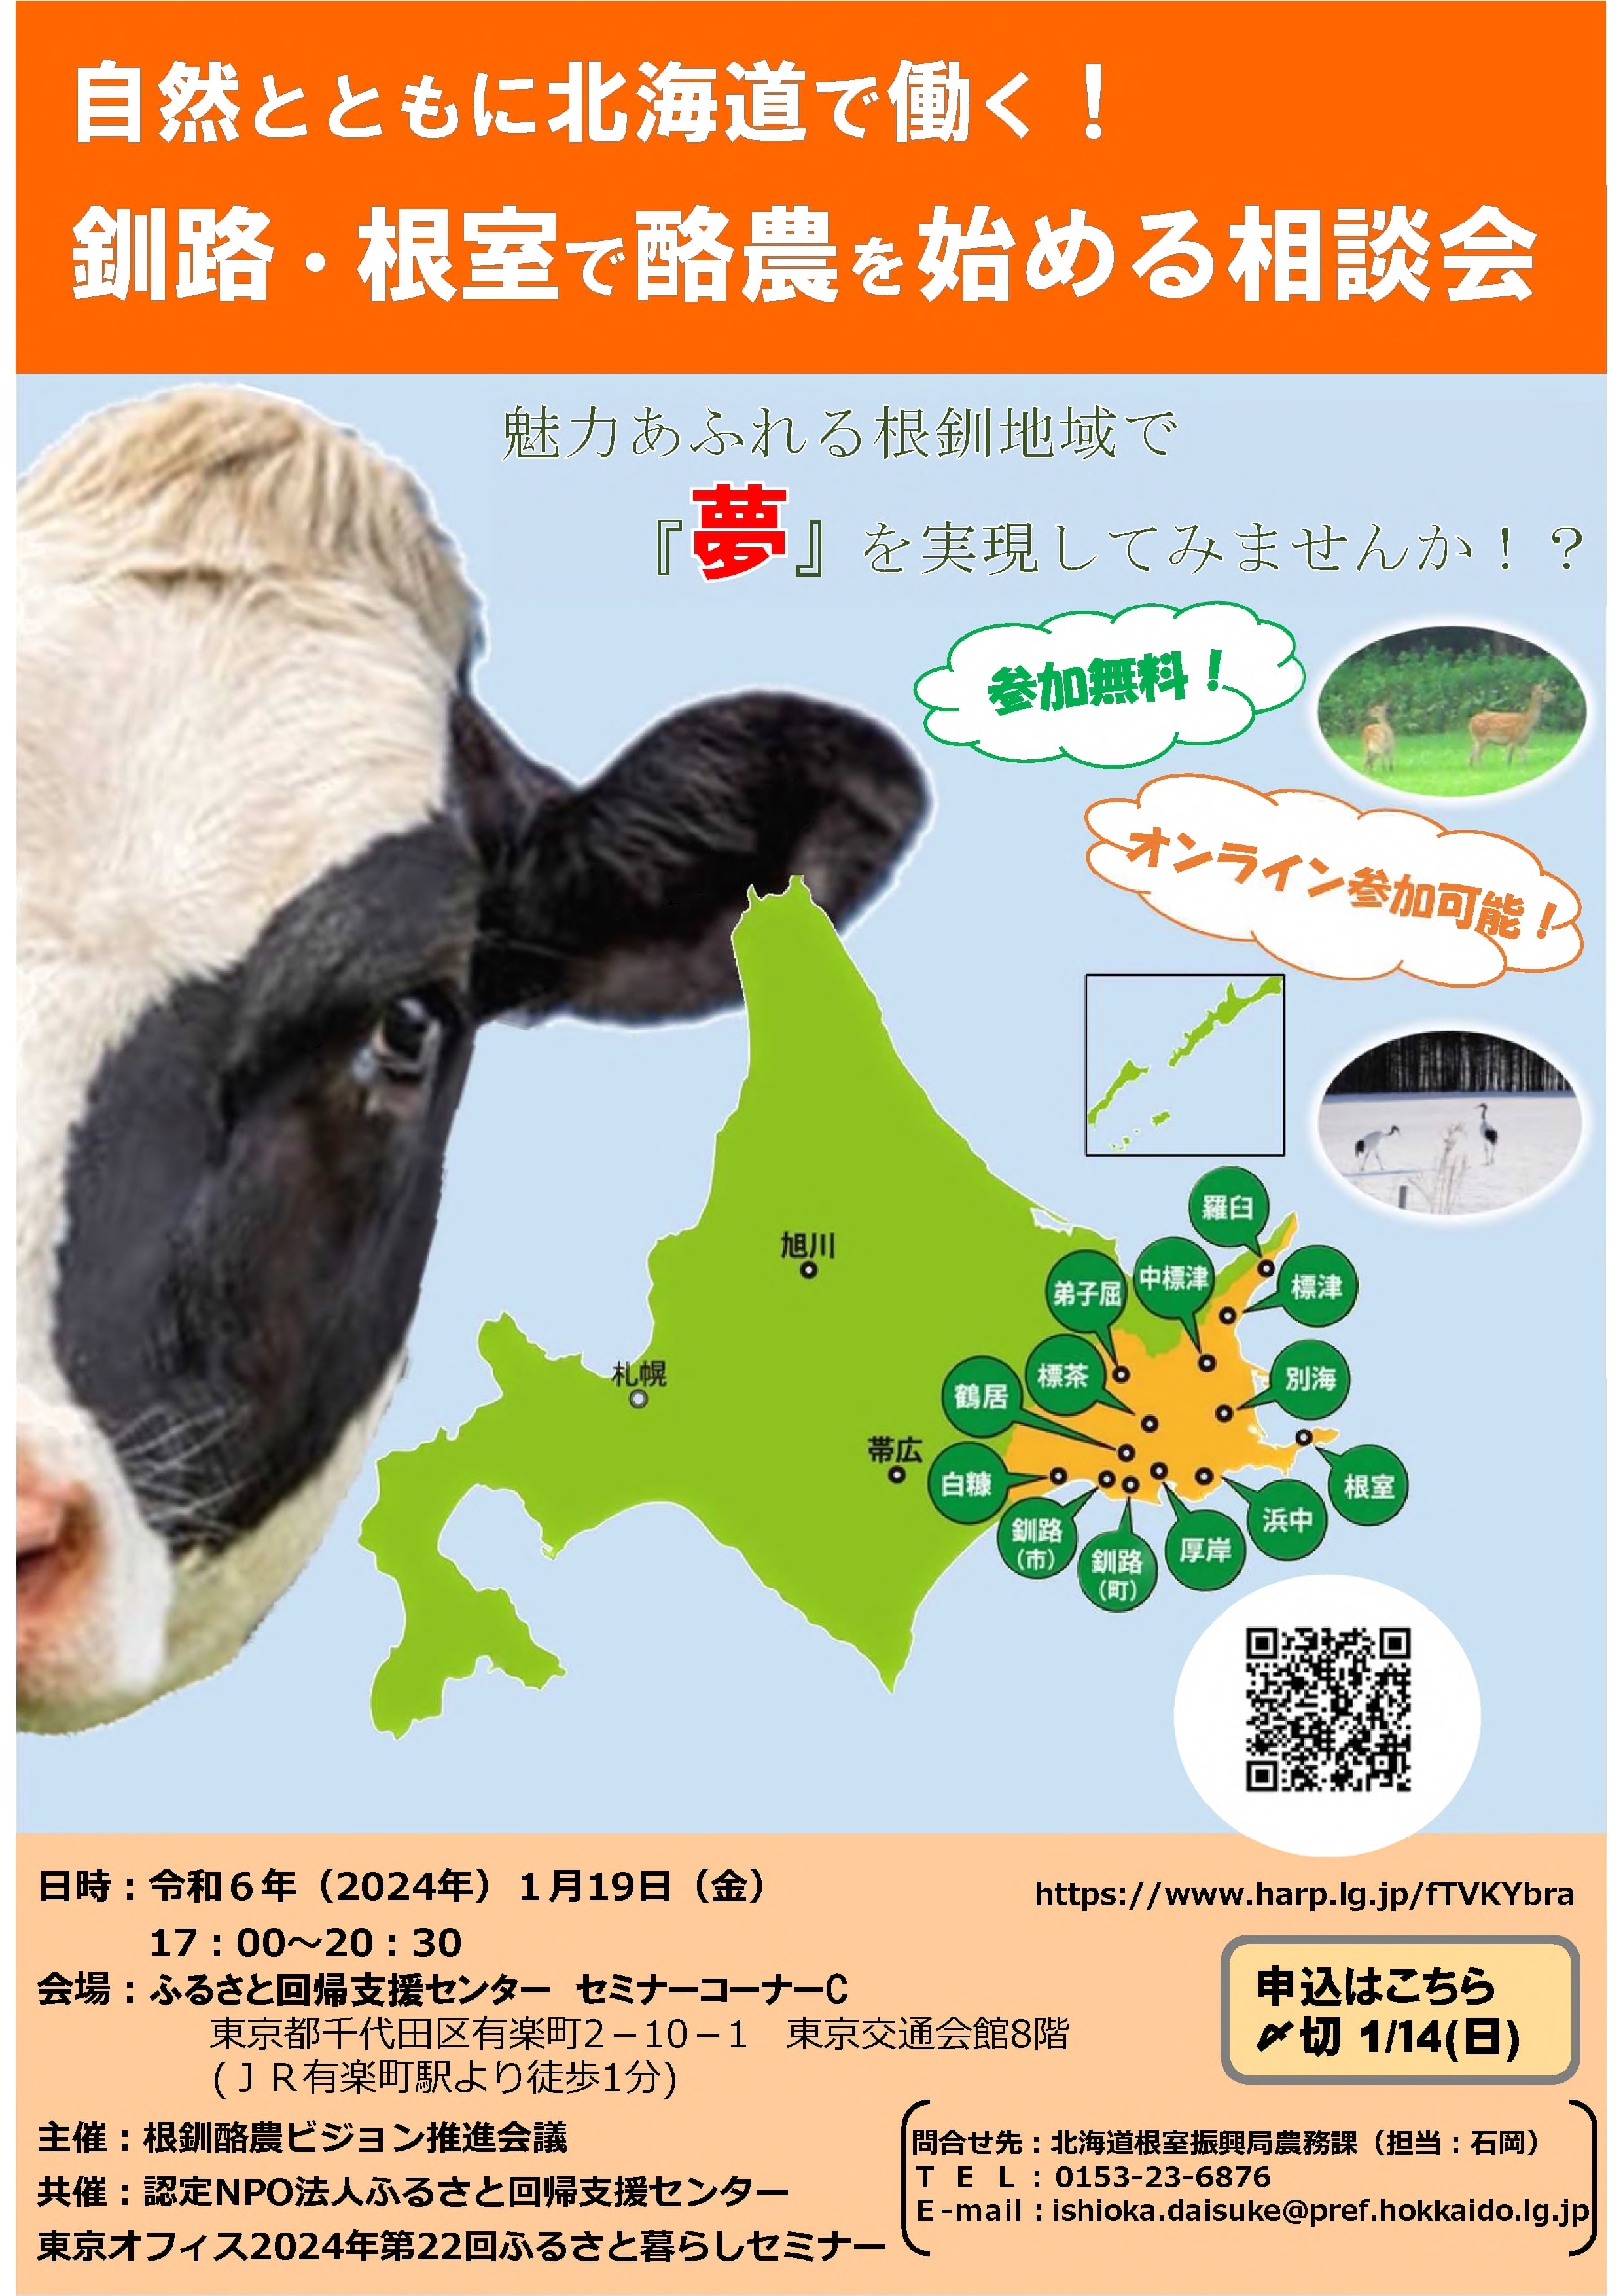 R5チラシ 就農相談会 開催要領_自然とともに北海道で働く!釧路・根室で酪農を始める相談会03_1 (JPG 2.85MB)